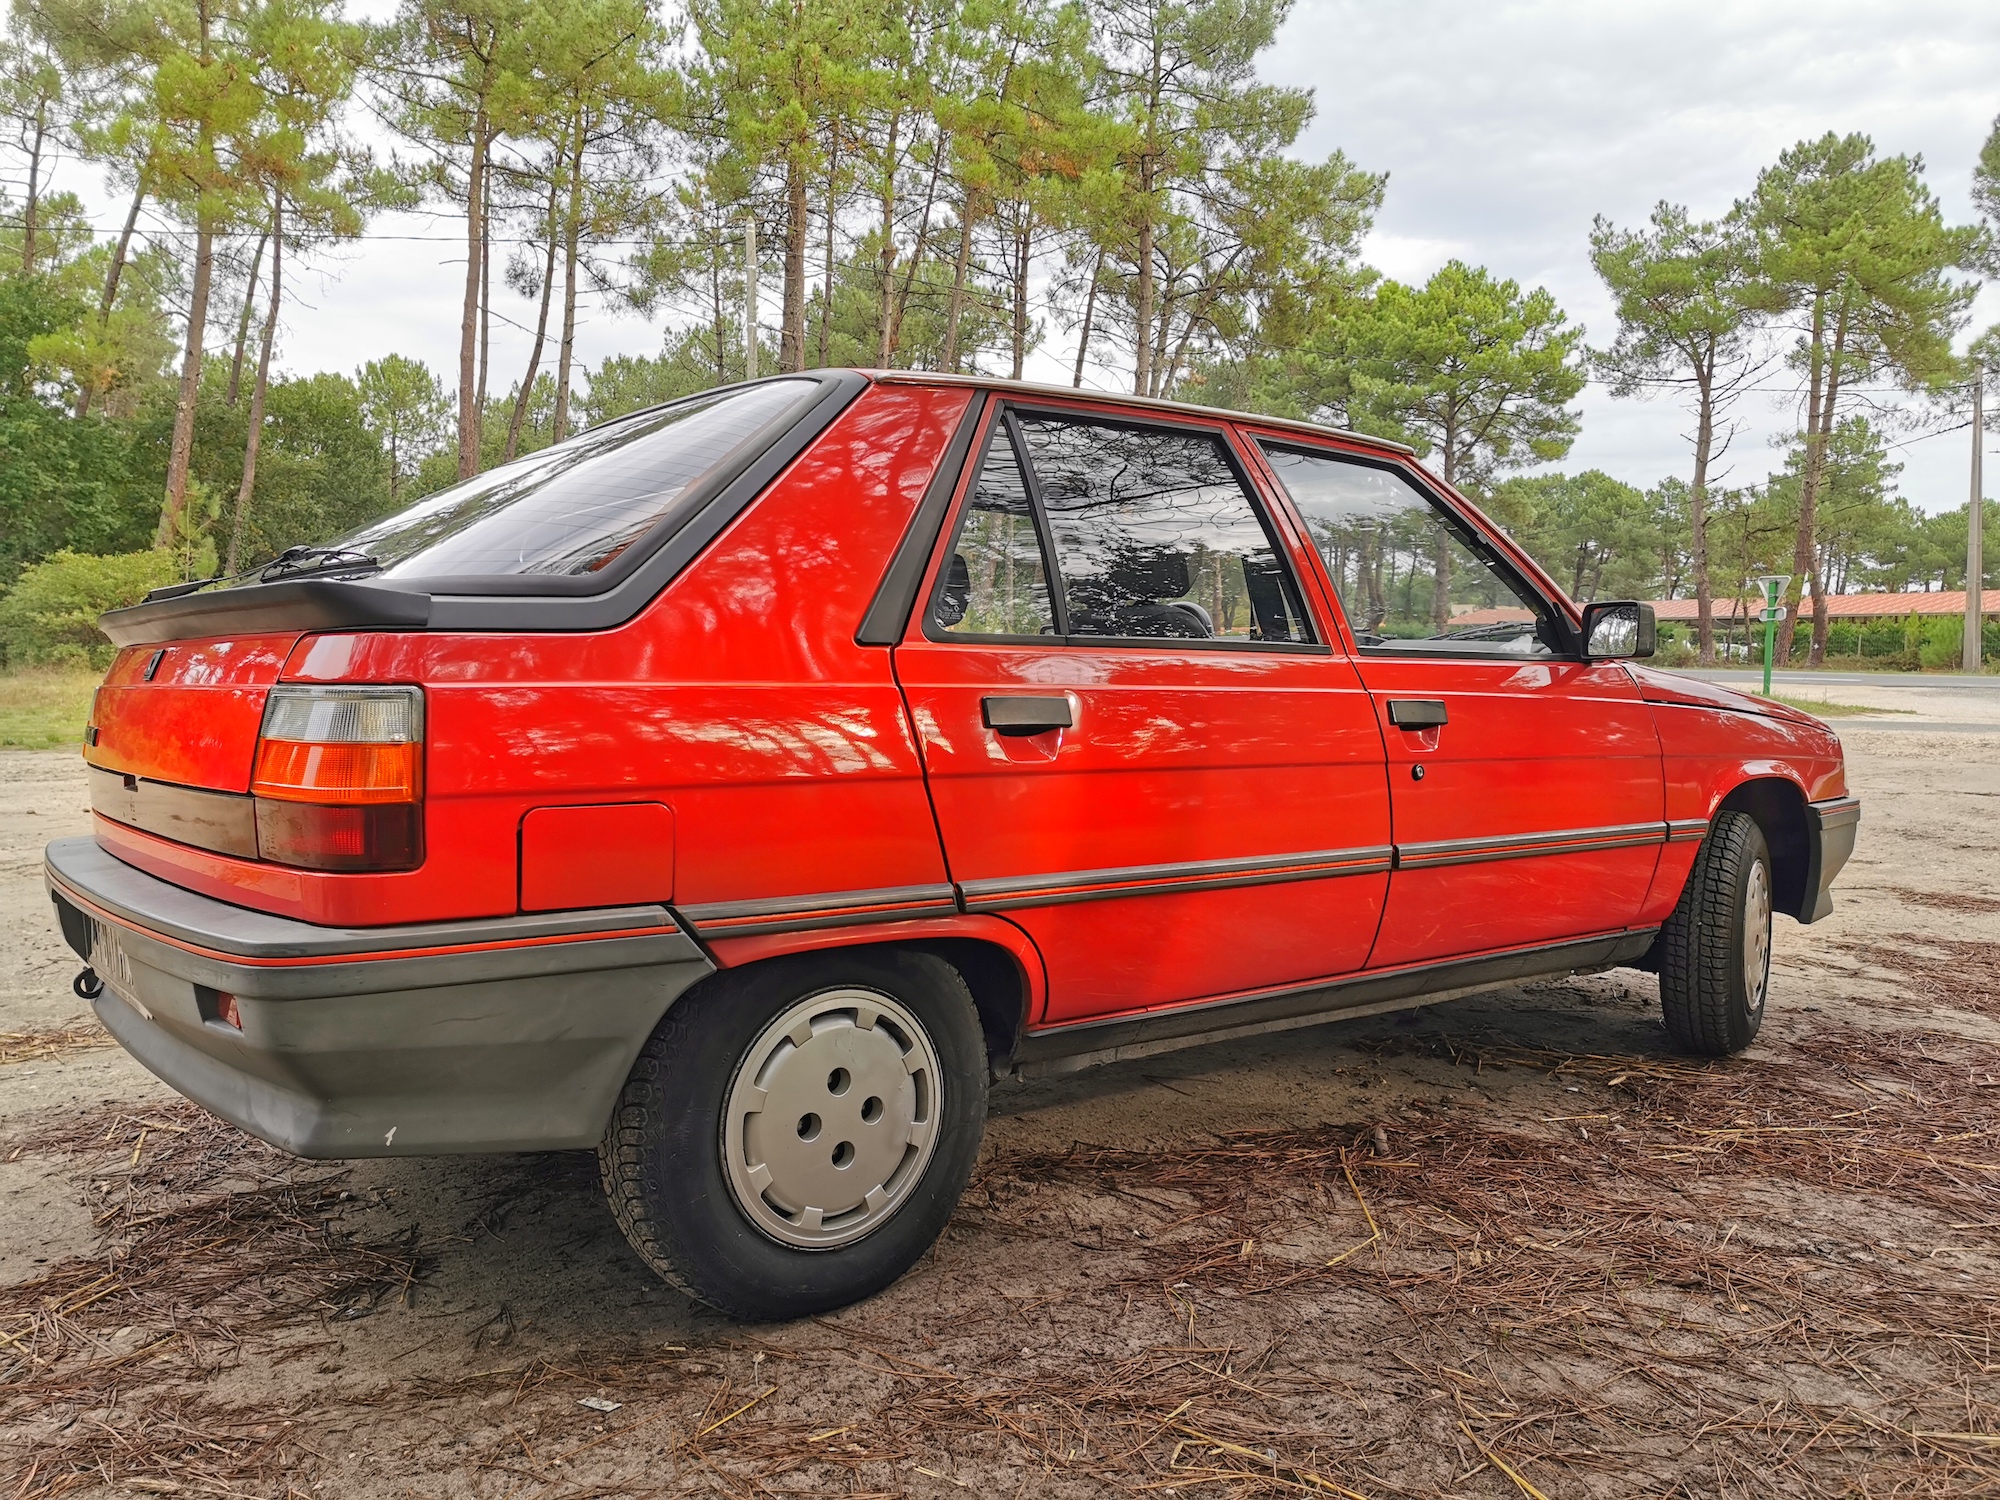 Renault R11 TL rouge dans un bel état de conservation ! (Jugez vous-même)